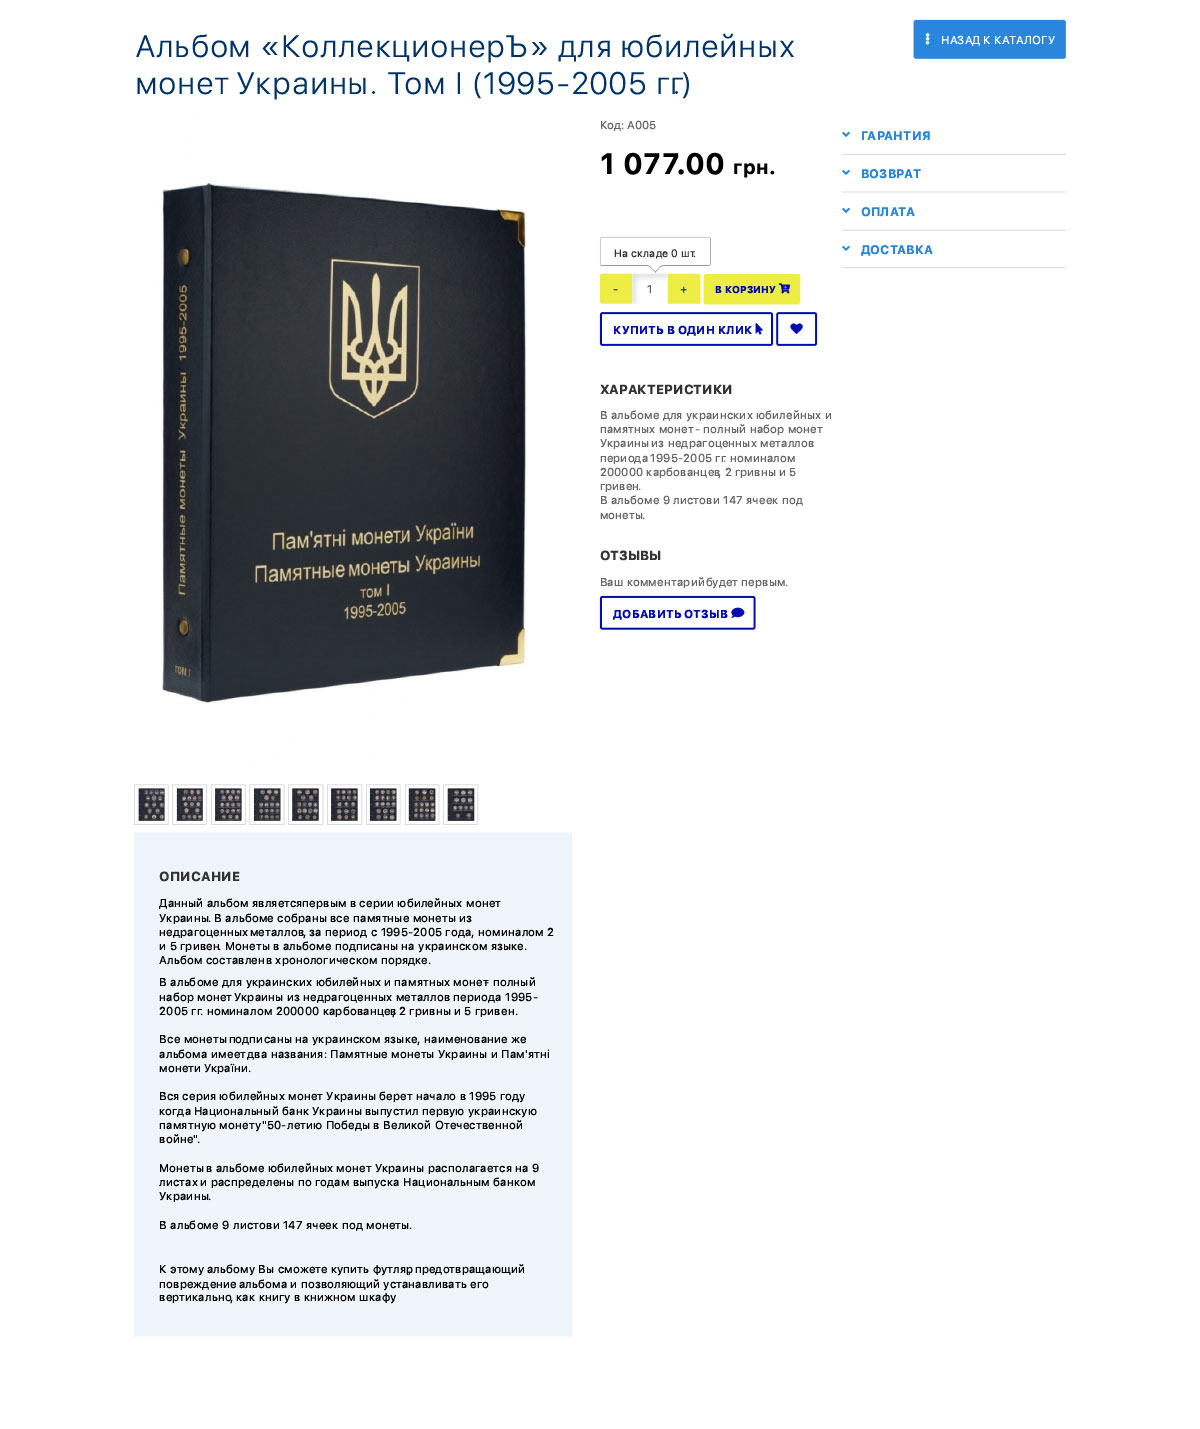 Создание сайта для компании Albom Kiev Ua - изображение 3